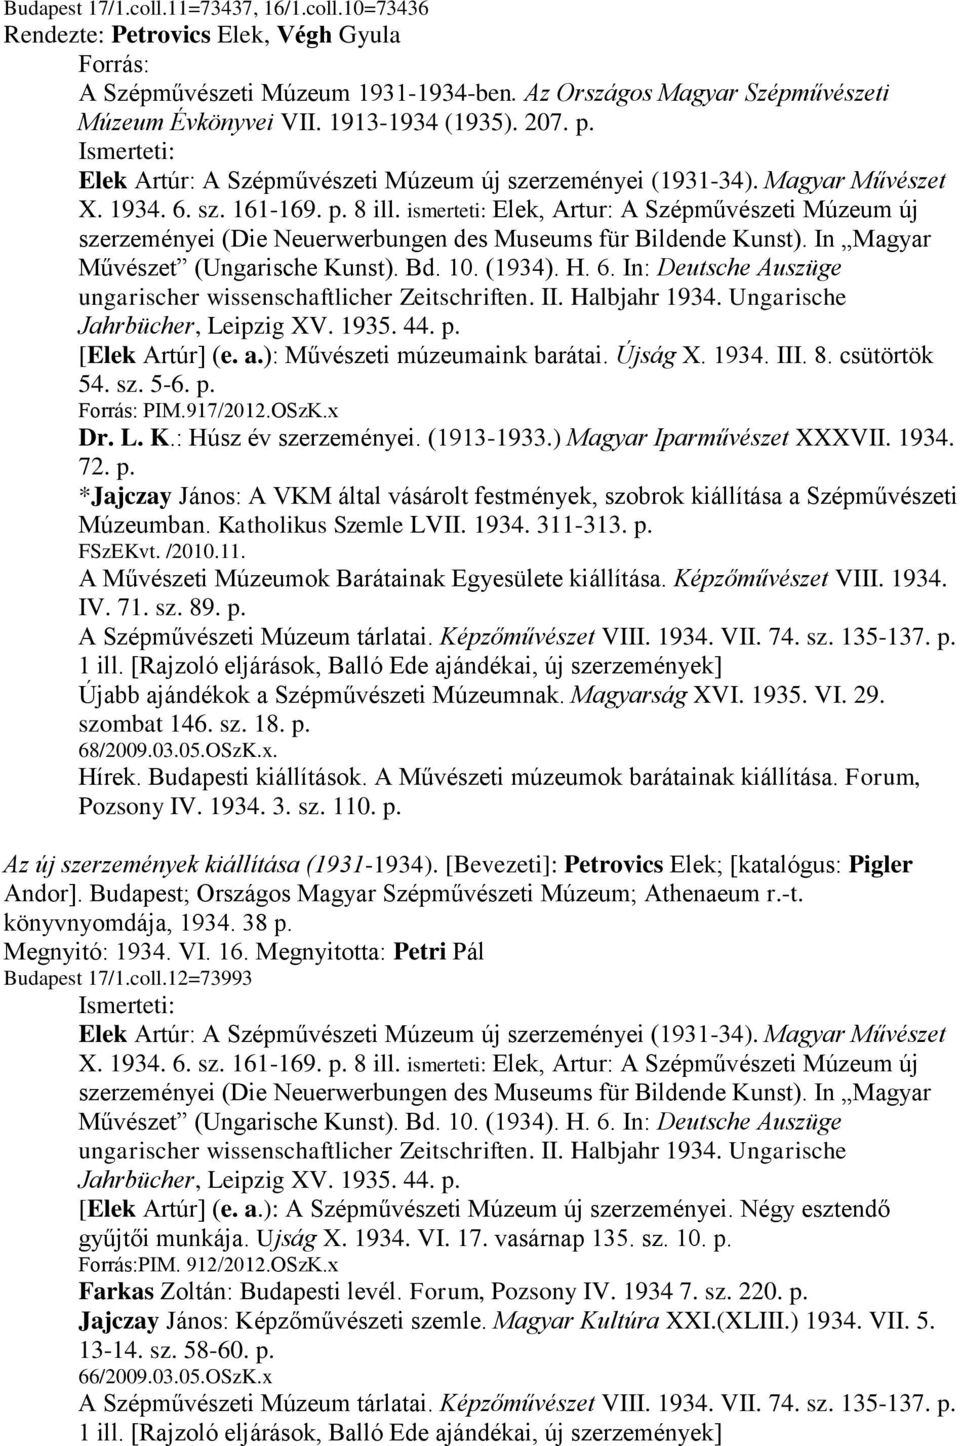 ismerteti: Elek, Artur: A Szépművészeti Múzeum új szerzeményei (Die Neuerwerbungen des Museums für Bildende Kunst). In Magyar Művészet (Ungarische Kunst). Bd. 10. (1934). H. 6.